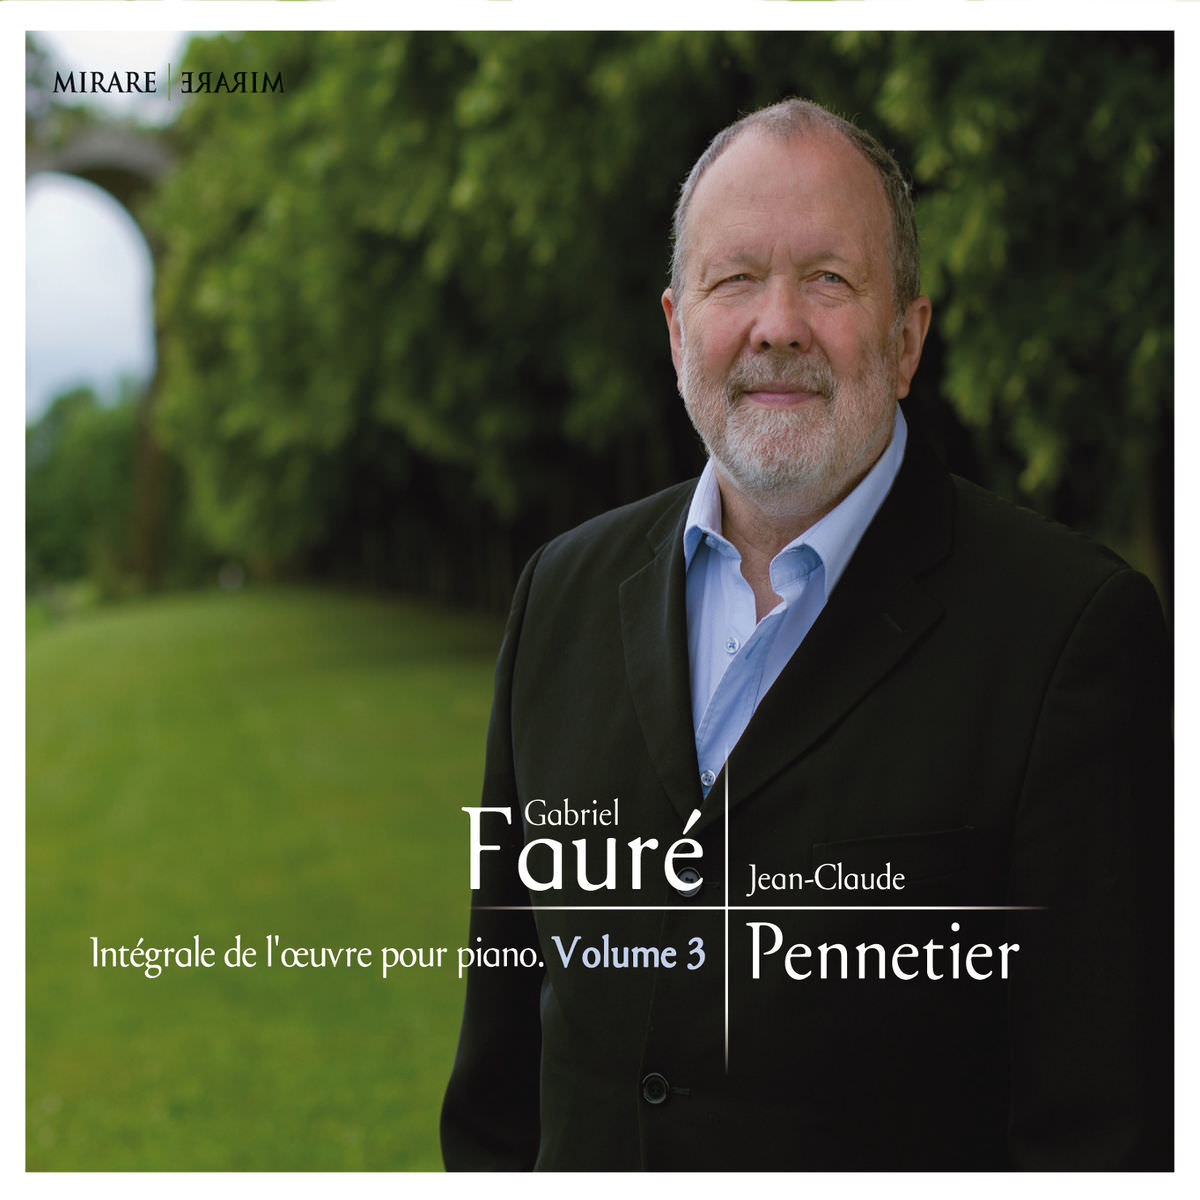 Jean-Claude Pennetier - Faure: Integrale de l’oeuvre pour piano, Vol 3 (2015) [FLAC 24bit/96kHz]